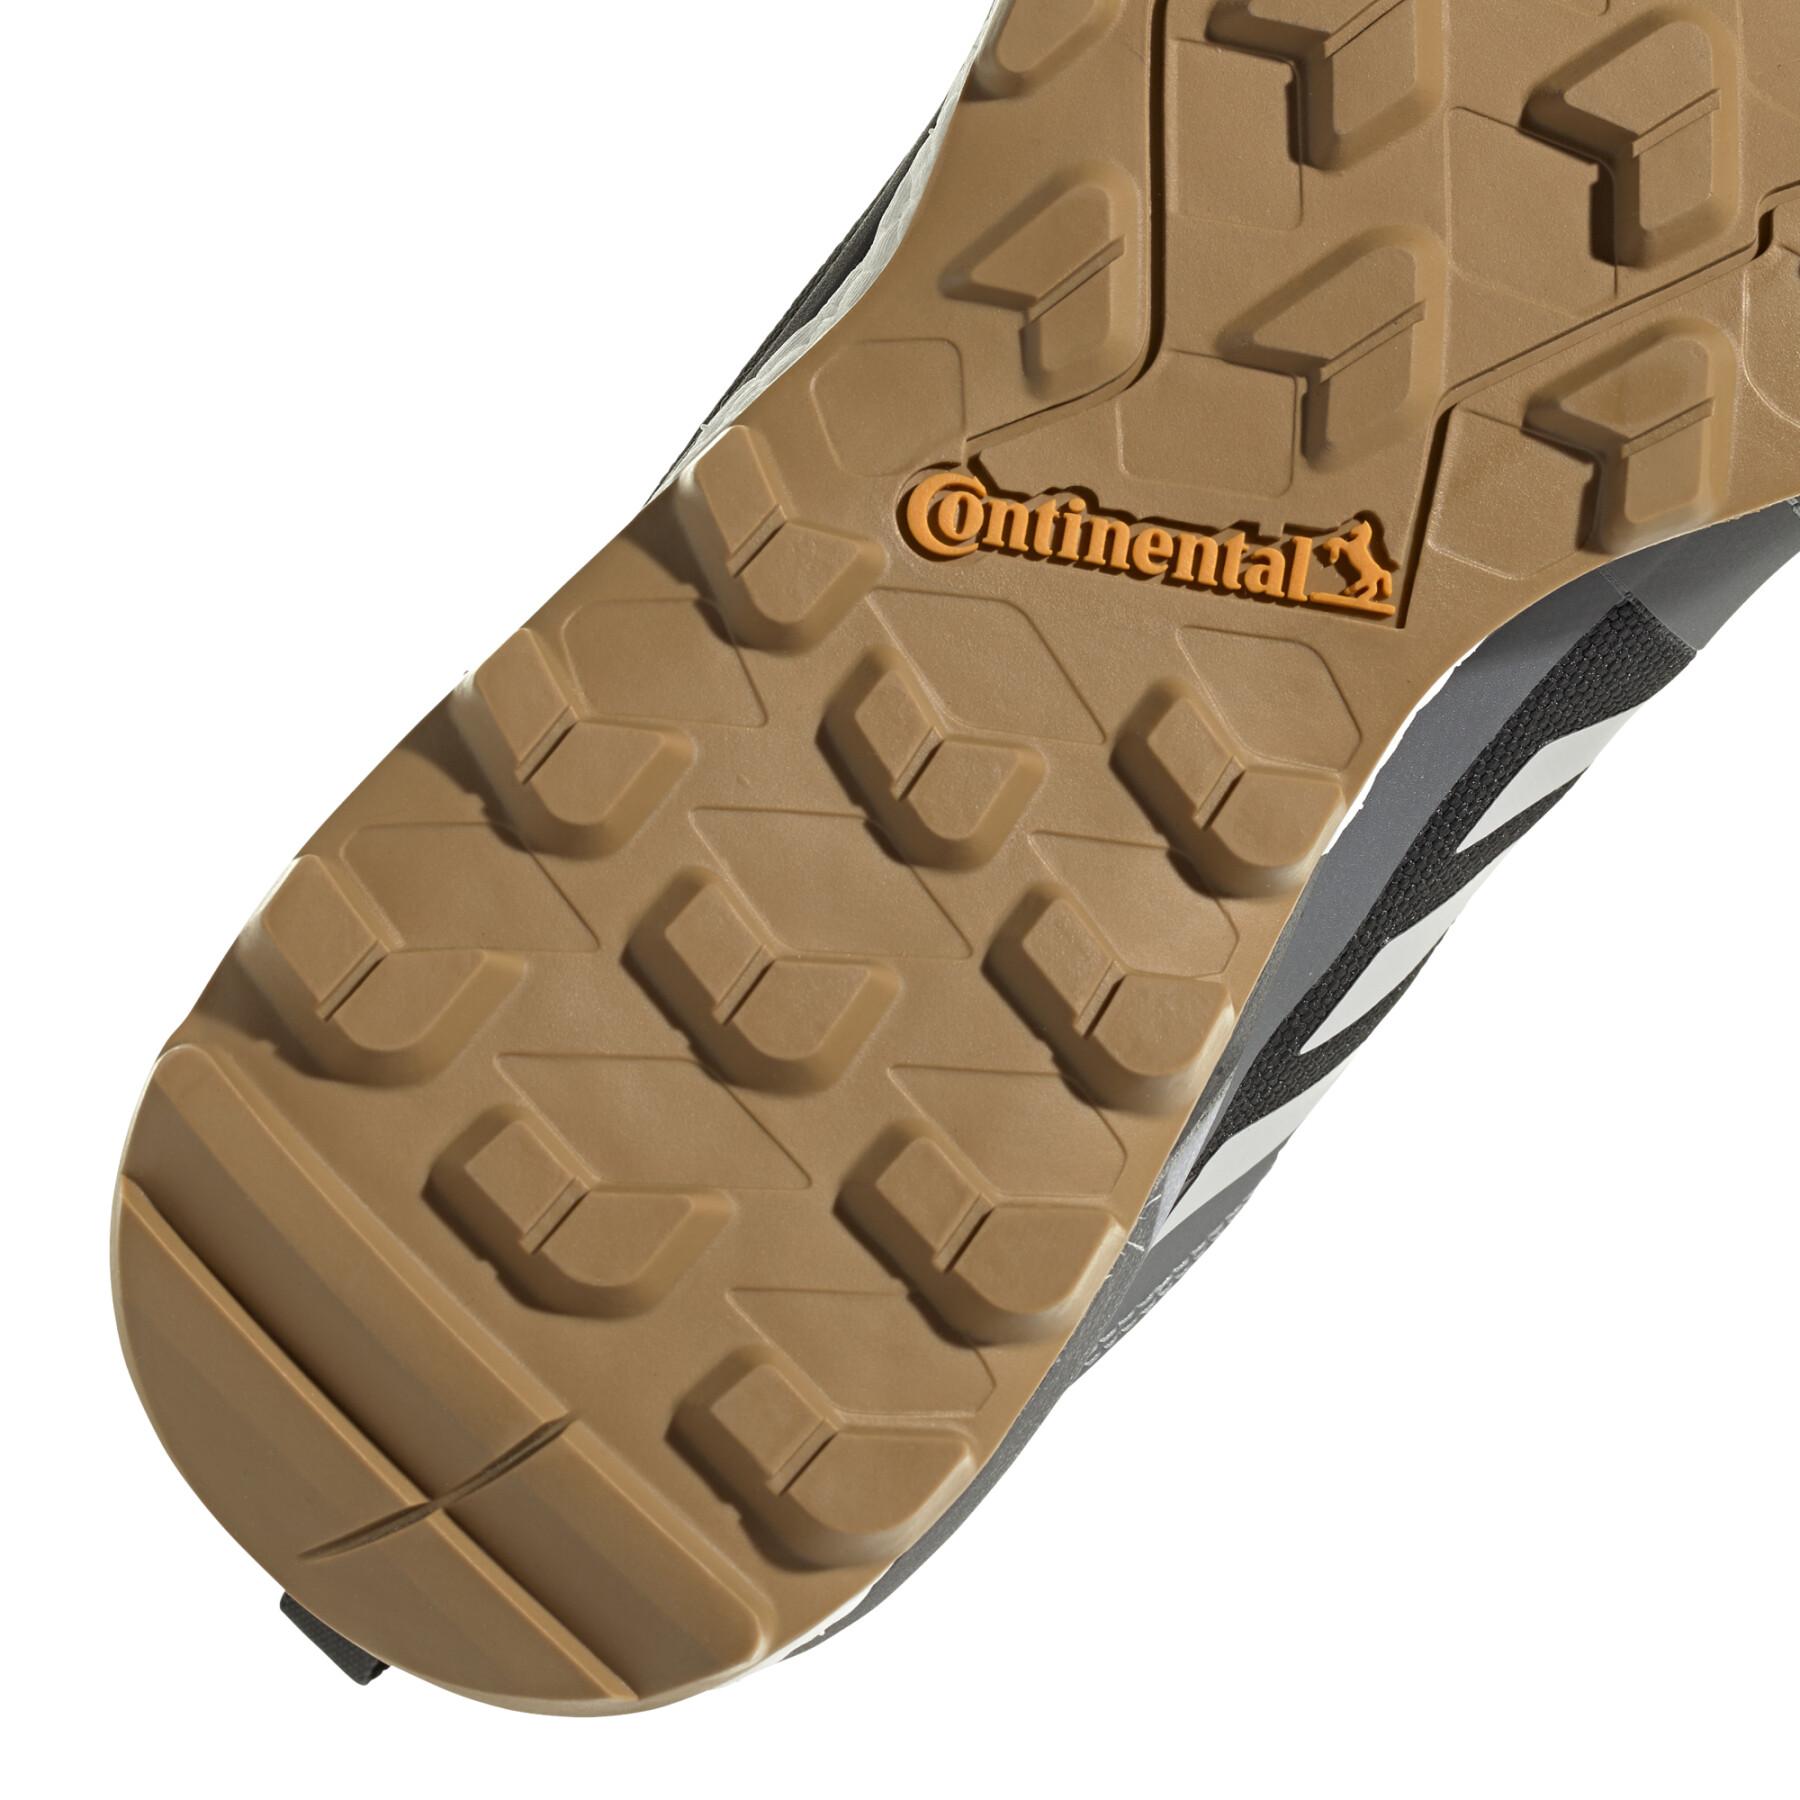 Trail schoenen adidas Terrex Skychaser GTX